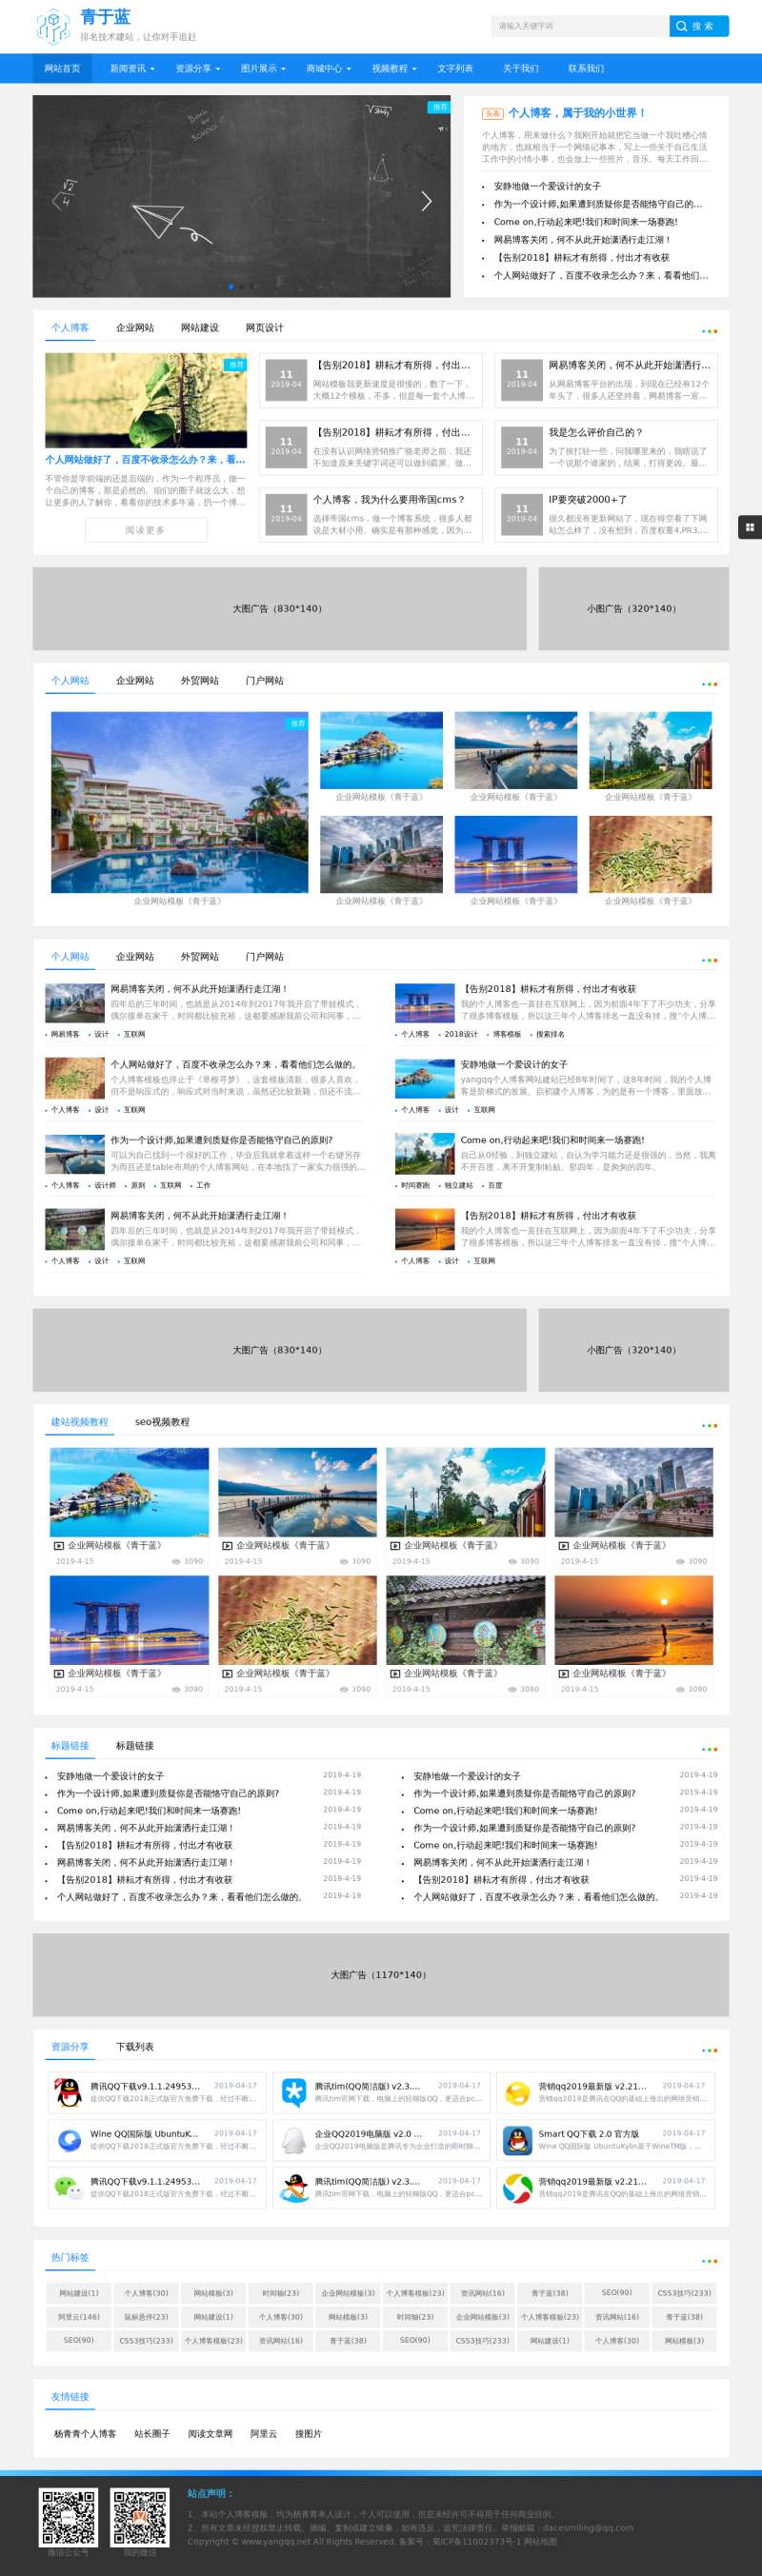 seo建站技术博客网站模板